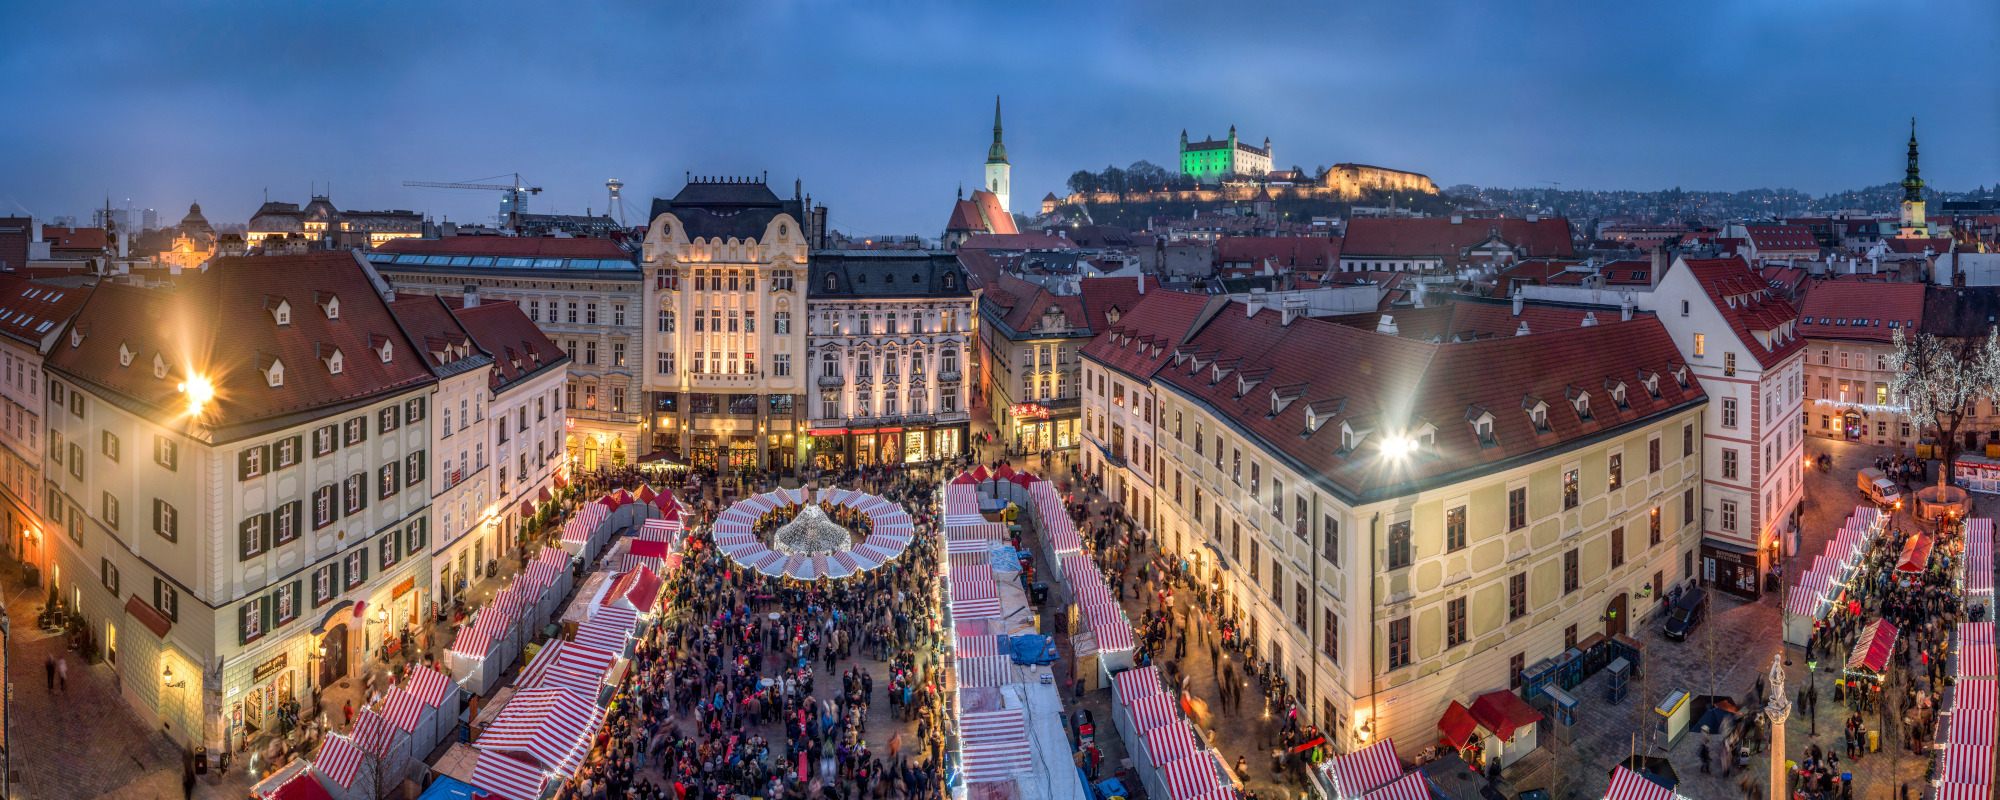 Slowakei - Überblick auf Bratislava Weihnachtsmarkt